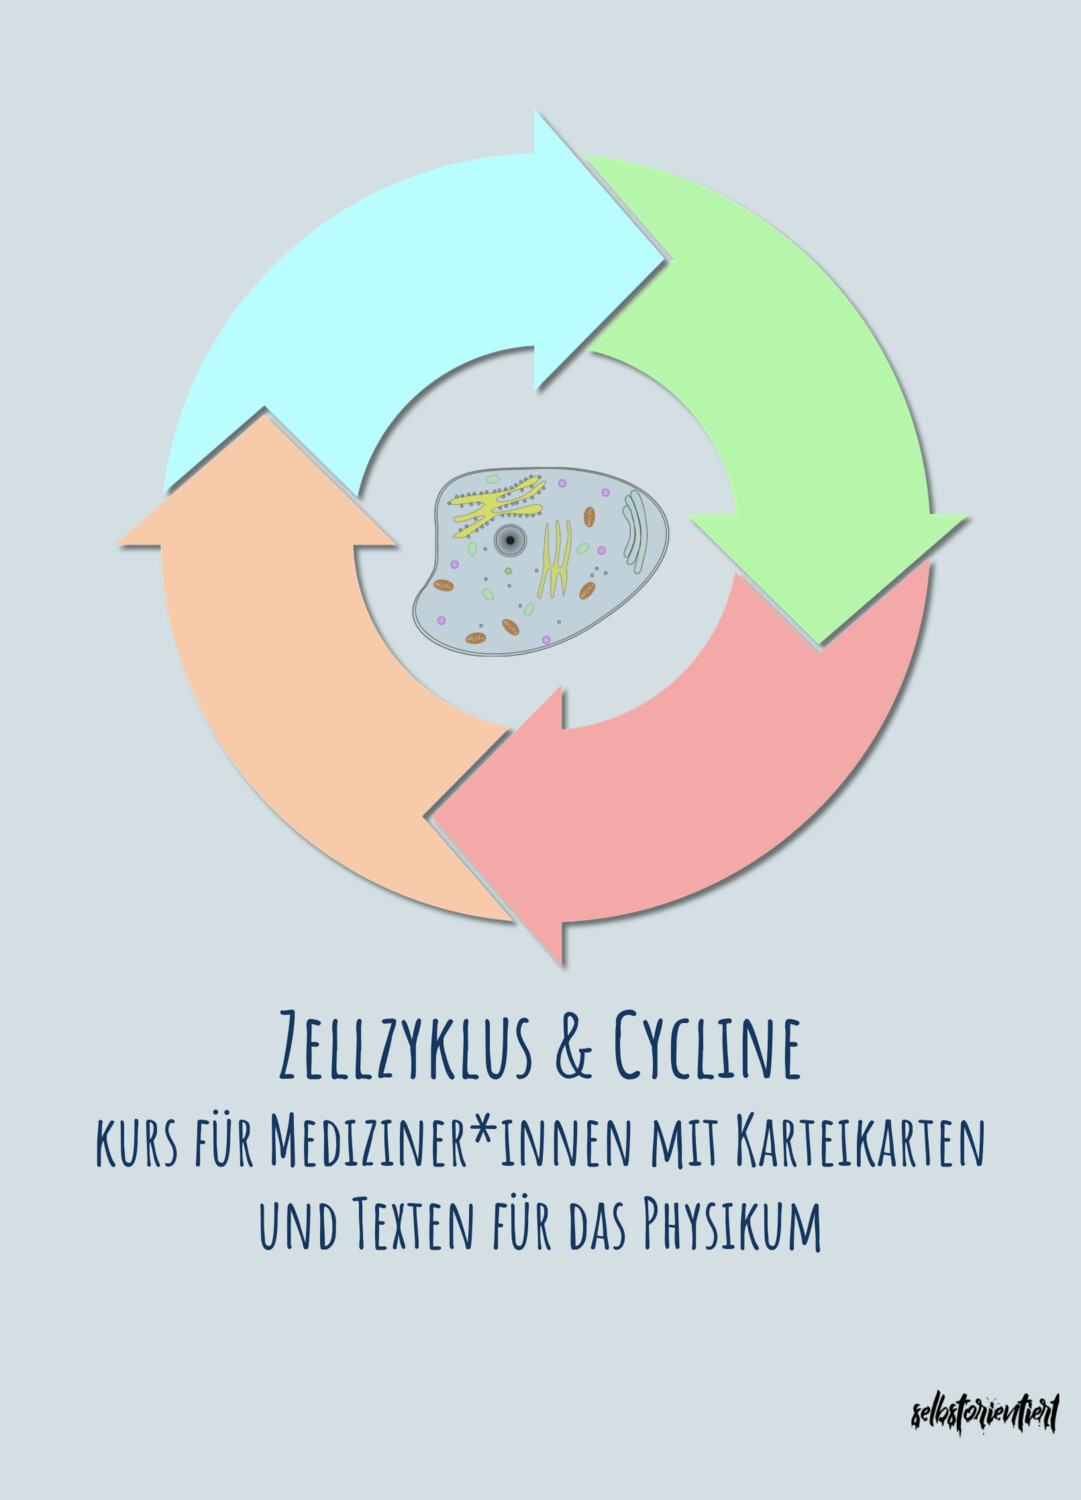 Zellzyklus & Cycline - Kurs mit Karteikarten & Texten